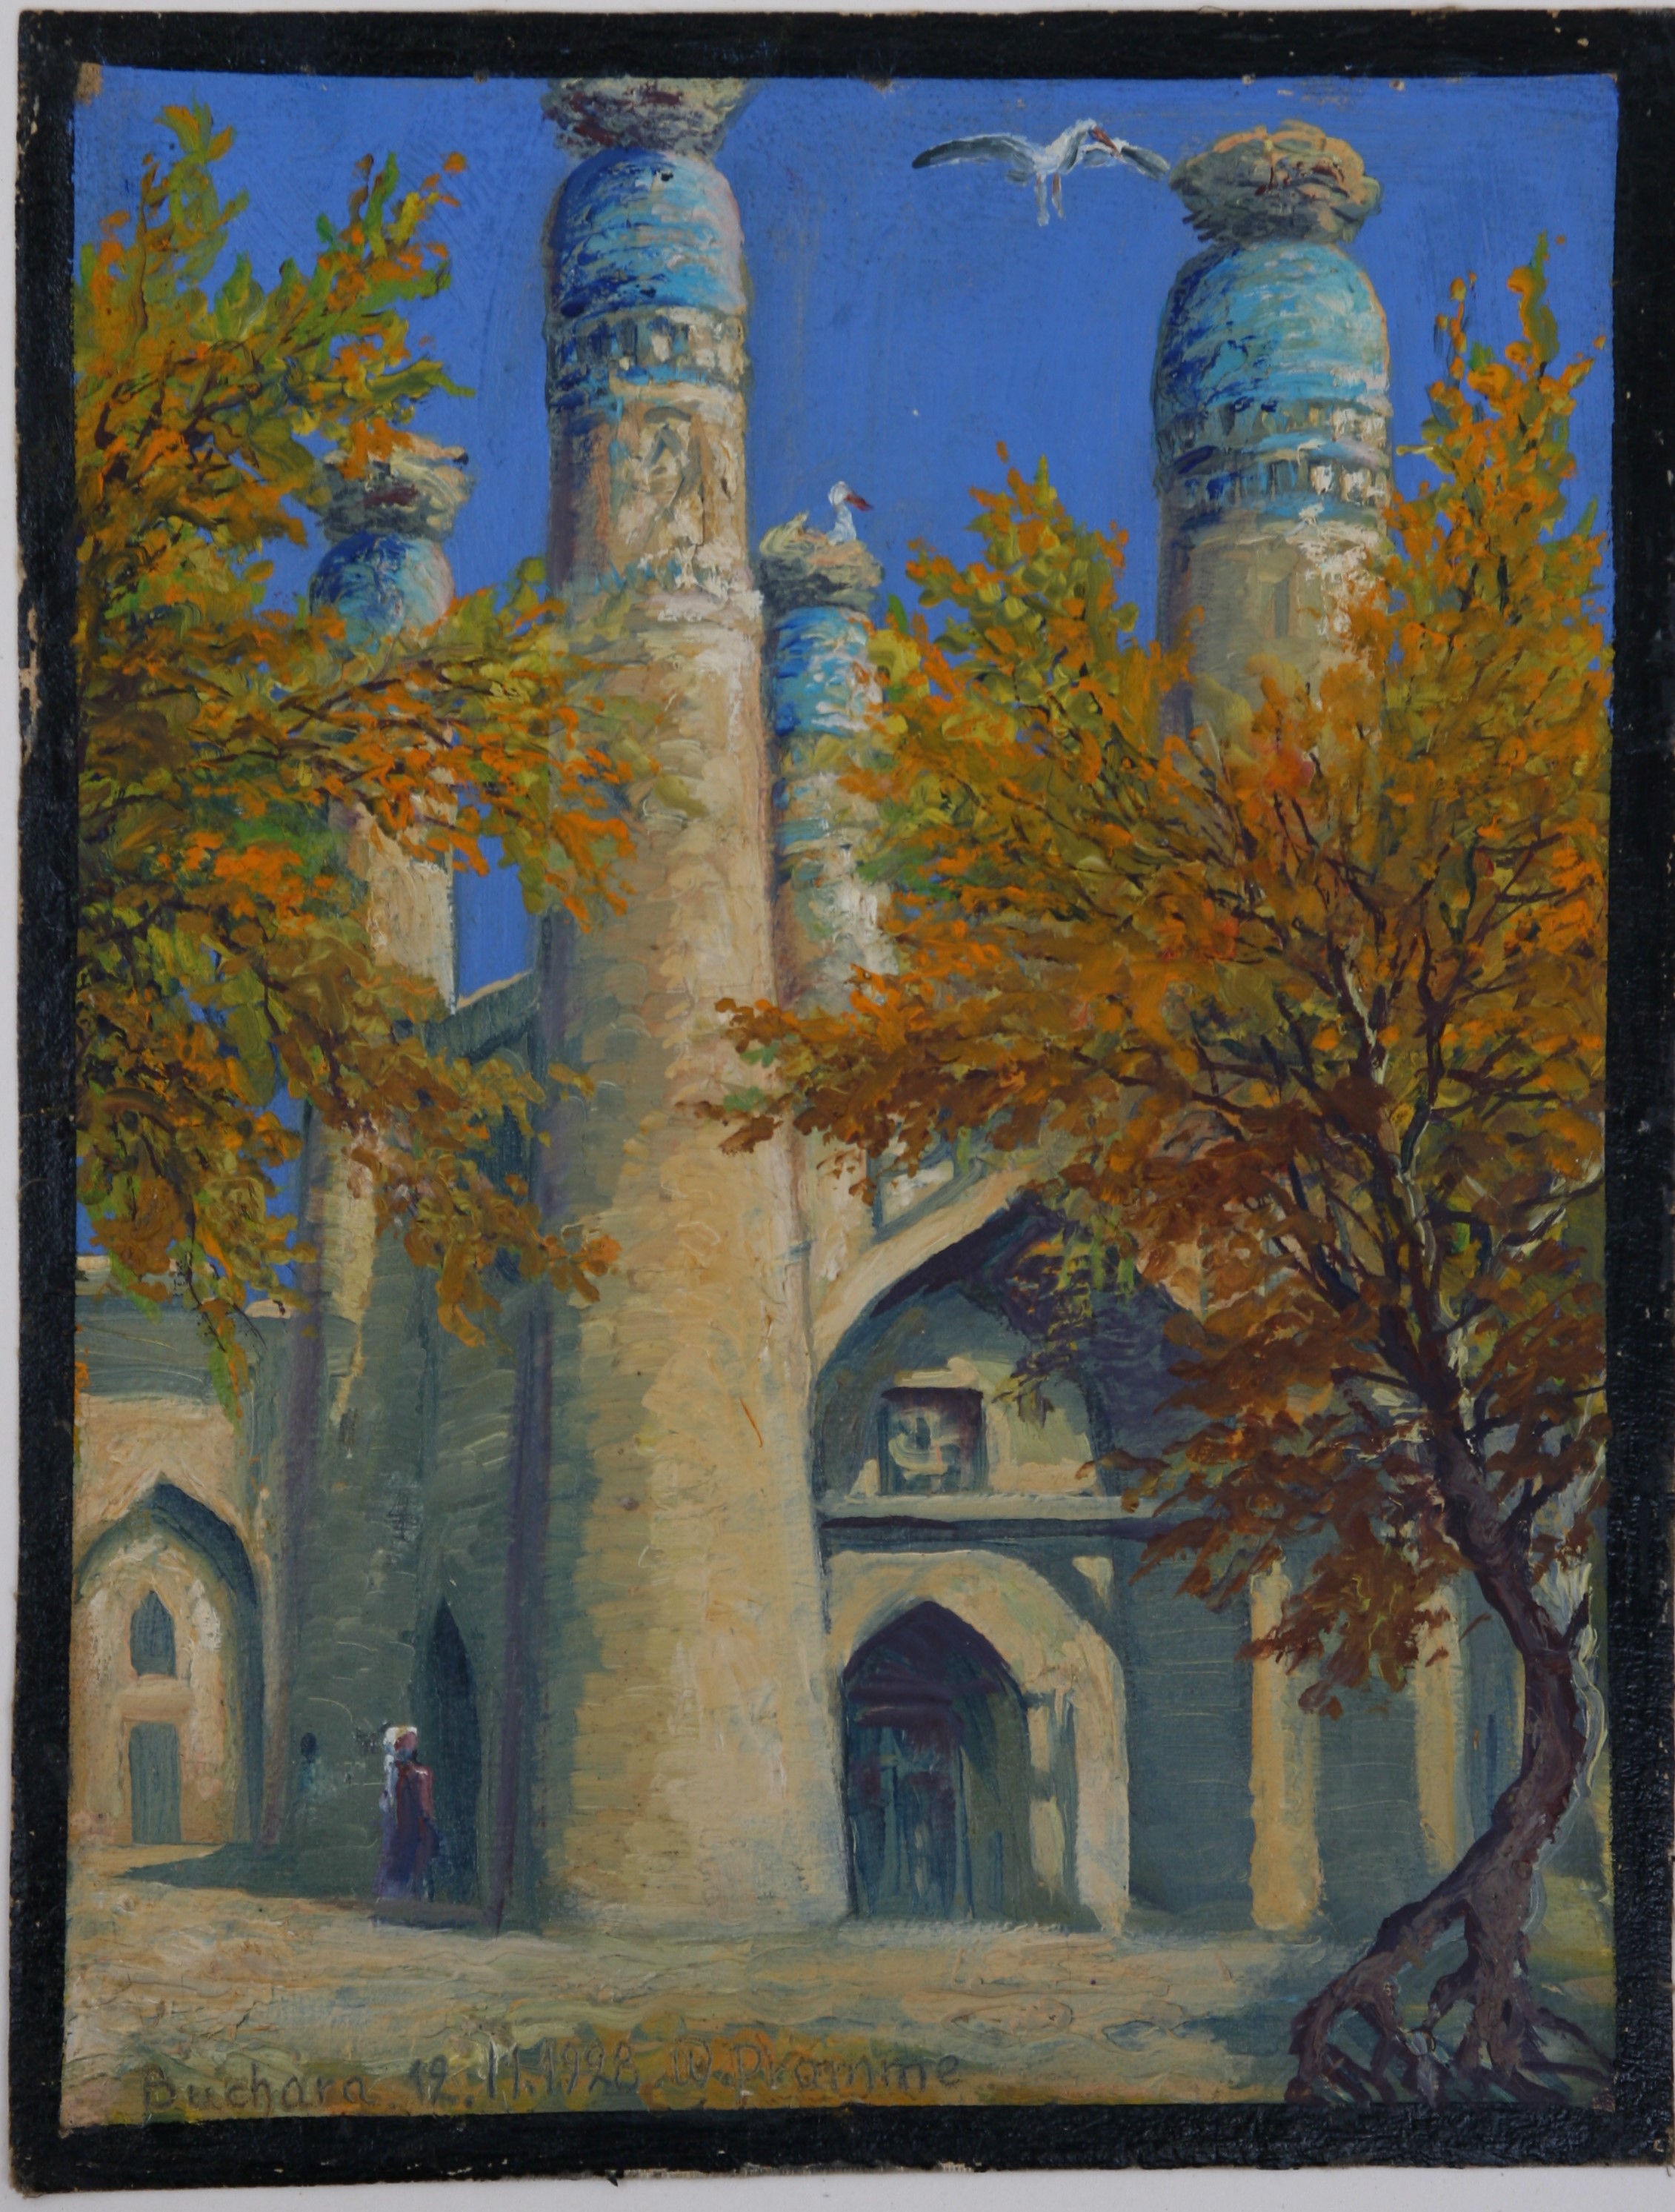 Moschee mit Storchennest, Buchara 12.11.1928 (Harzmuseum Wernigerode CC BY-NC-SA)